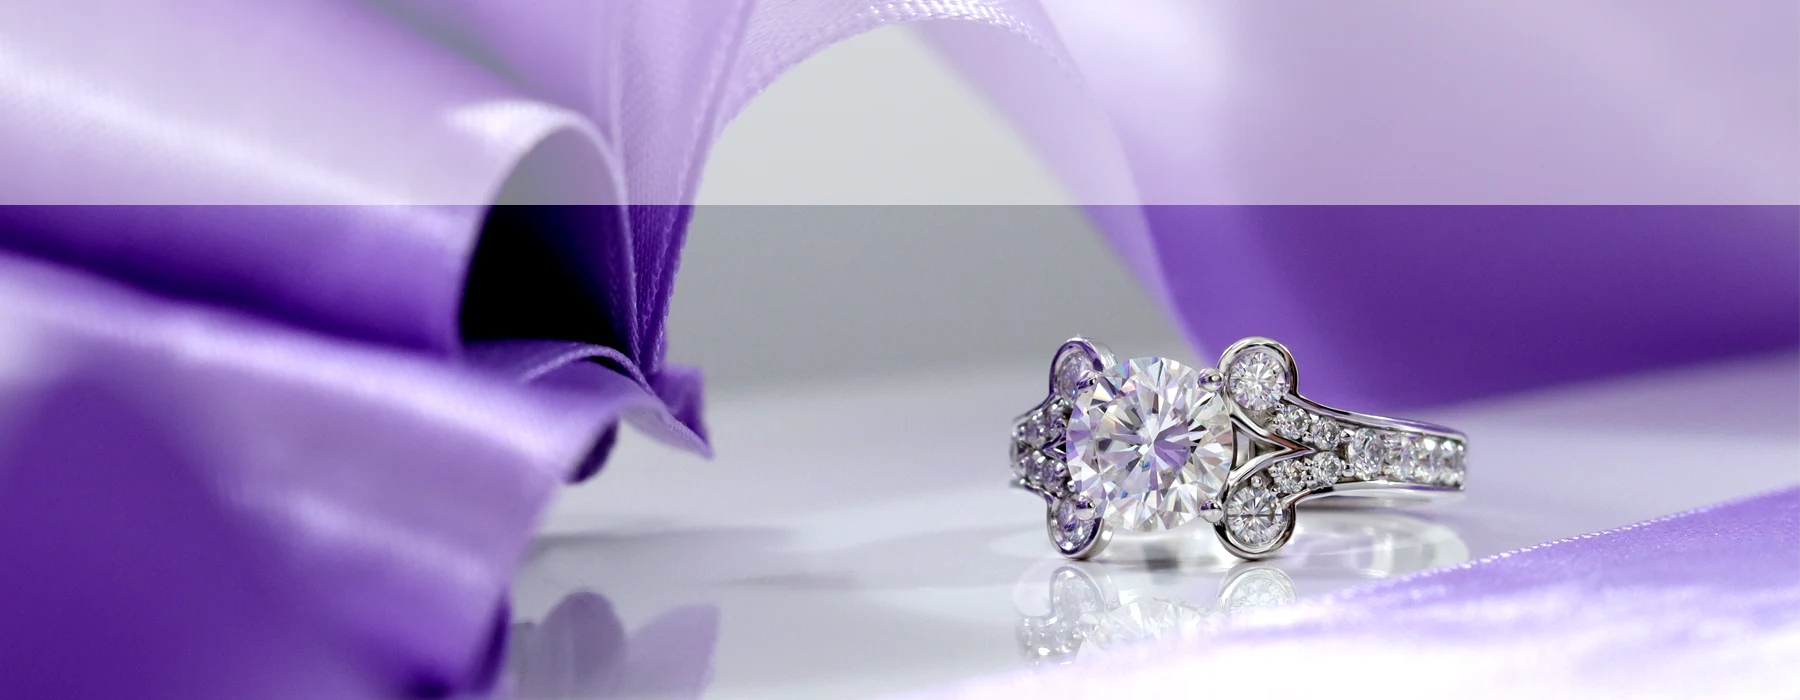 designer gold and platinum lab diamond engagement rings at Quorri Canada